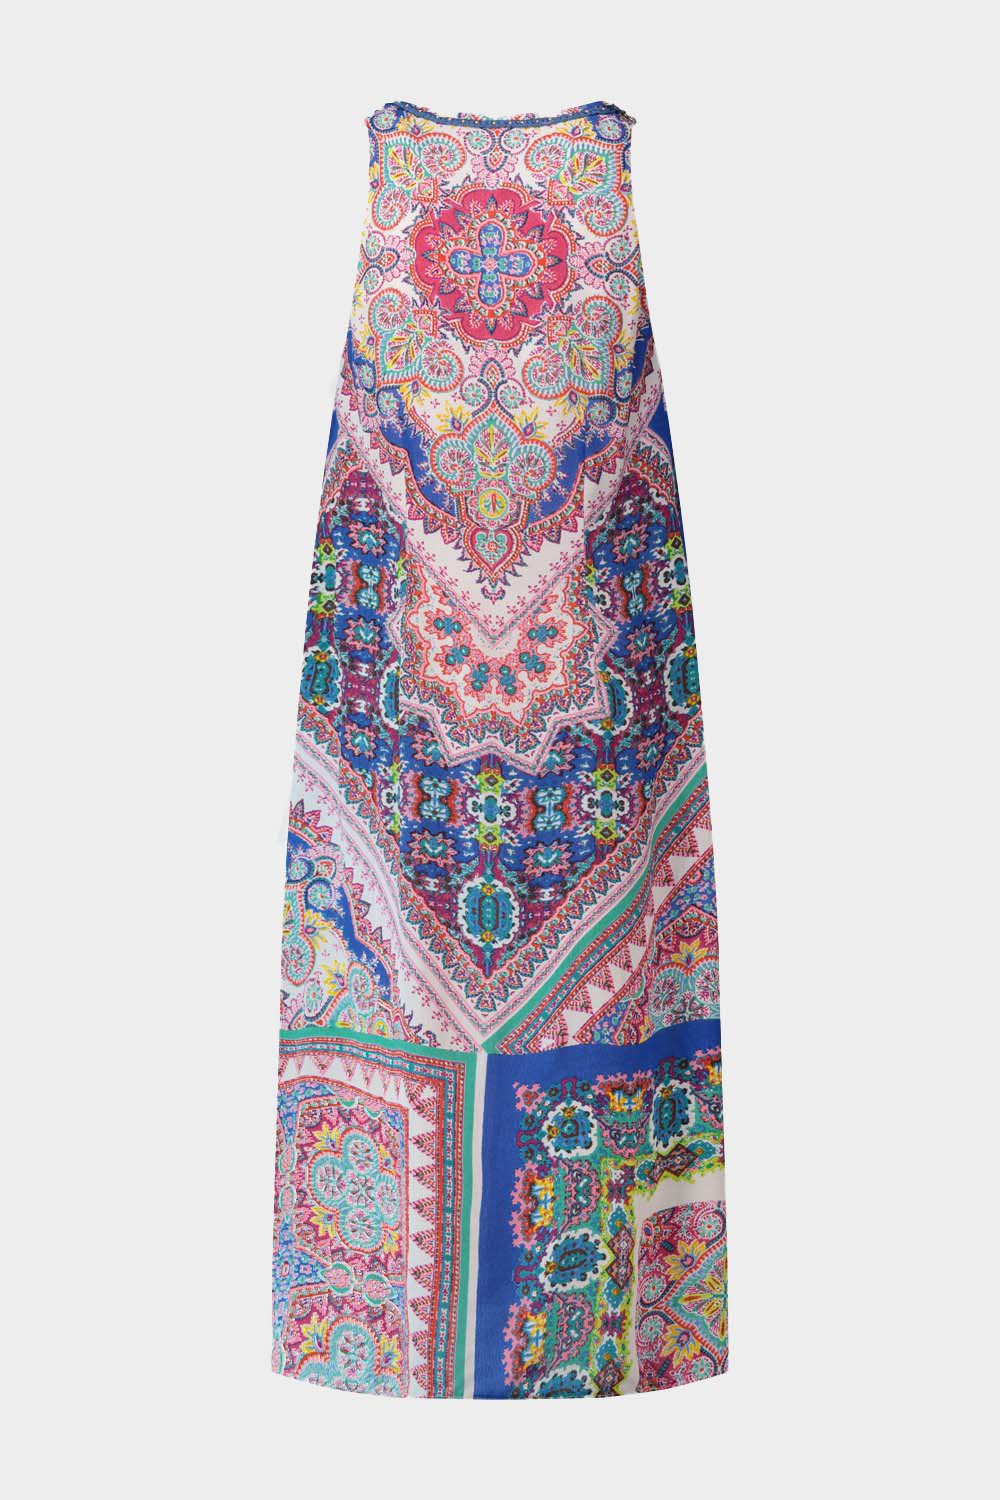 שמלת SOHO לנשים הדפס אתני צבעוני RENE DERHY Vendome online | ונדום .